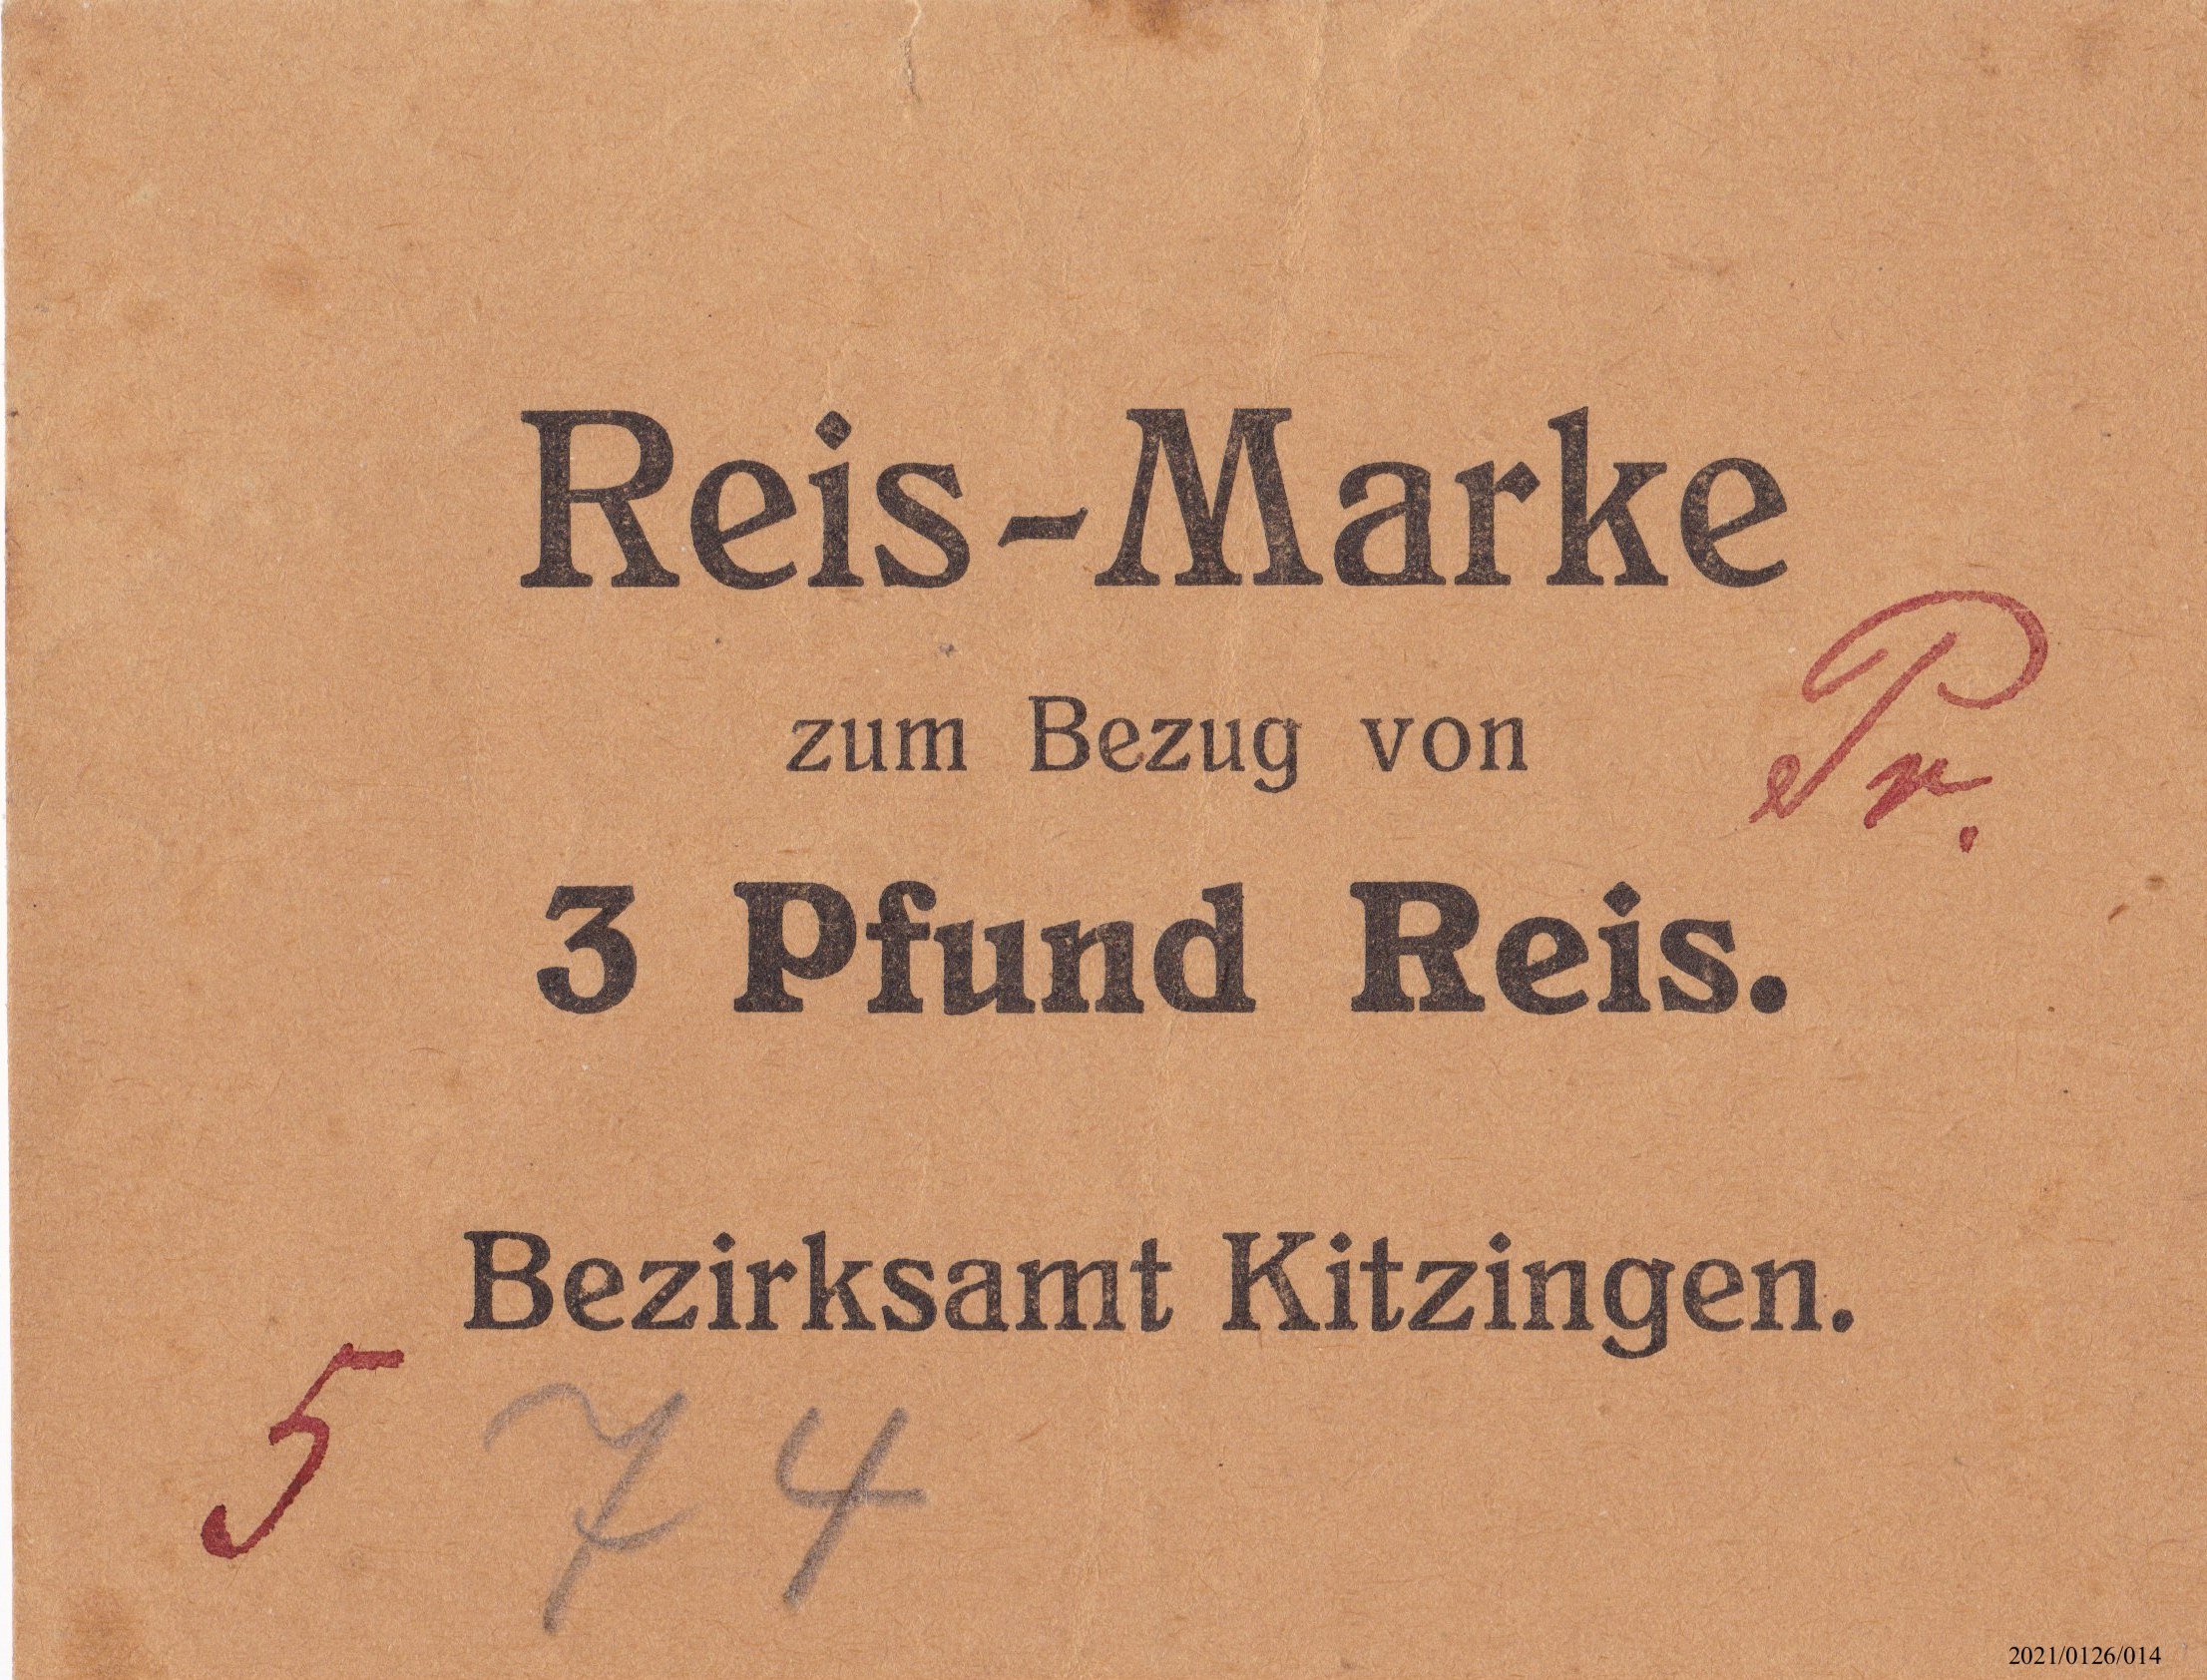 Reismarke Bezirksamt Kitzingen 1918(?) (Museumsgesellschaft Bad Dürkheim e. V. CC BY-NC-SA)